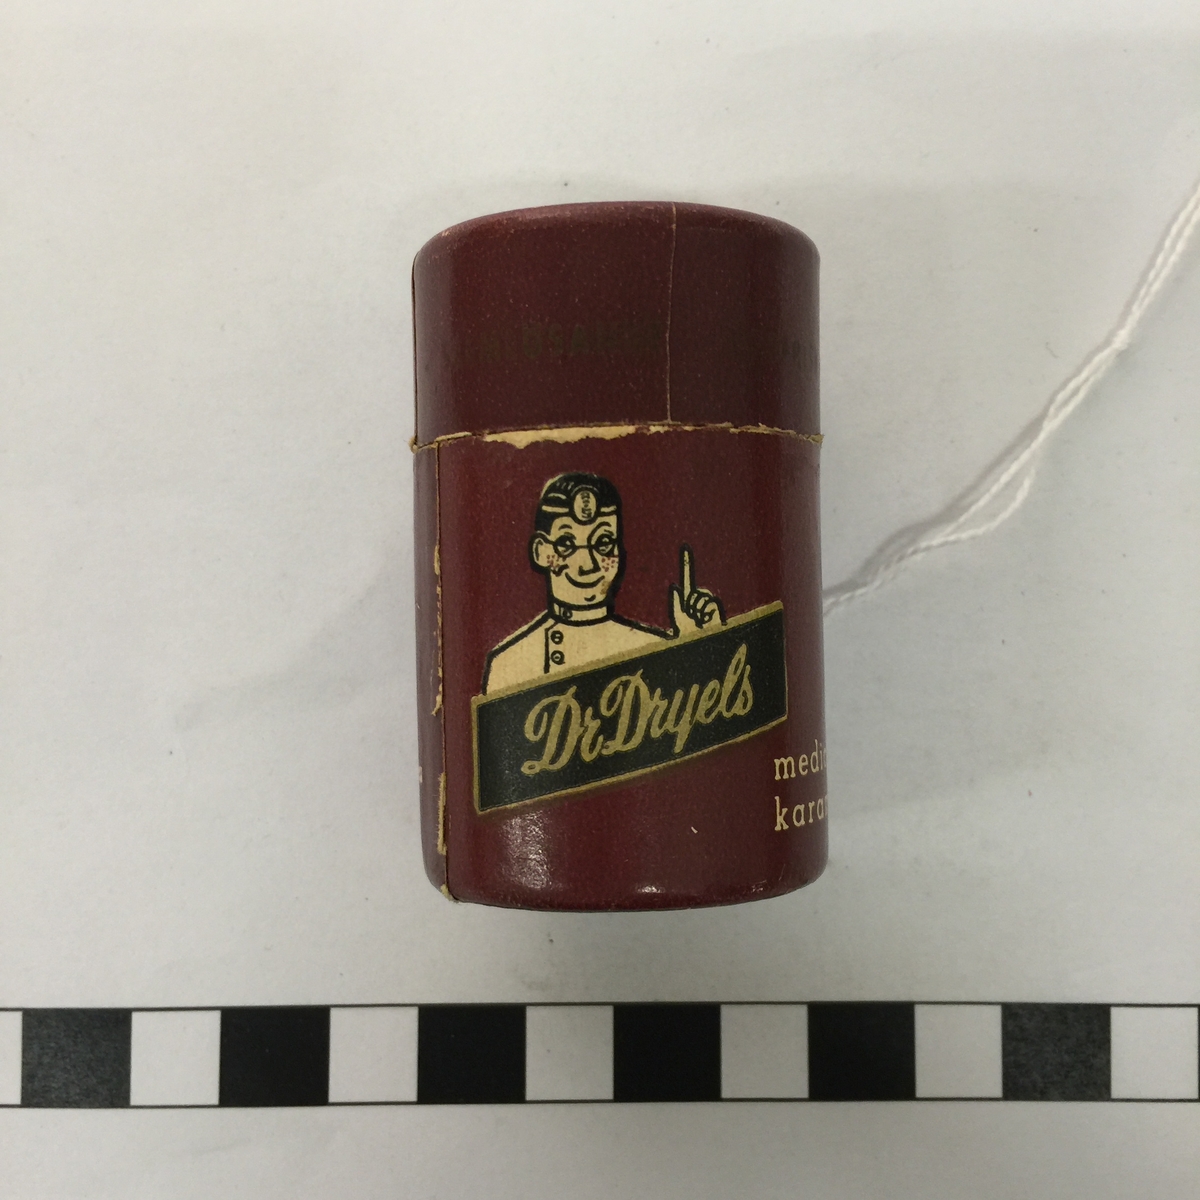 Cylinderformad tändsticksbehållare av papp i form av reklamartikel för Dr Dryels medicinska karameller.
Löst lock.